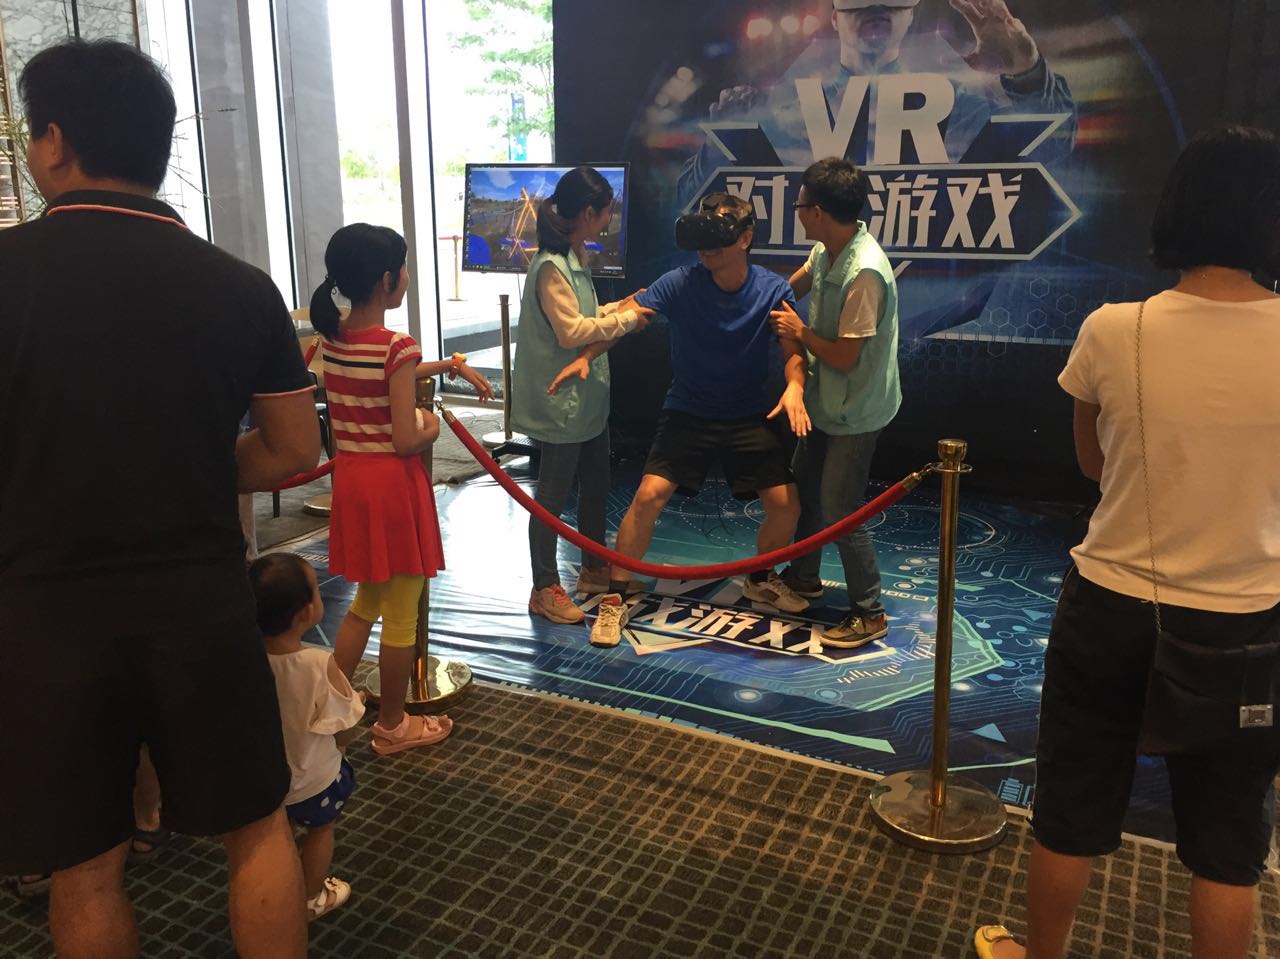 深圳VR极限挑战设备租赁 、VR滑雪机、VR加特林租赁 VR漂流、VR滑雪机、VR加特林